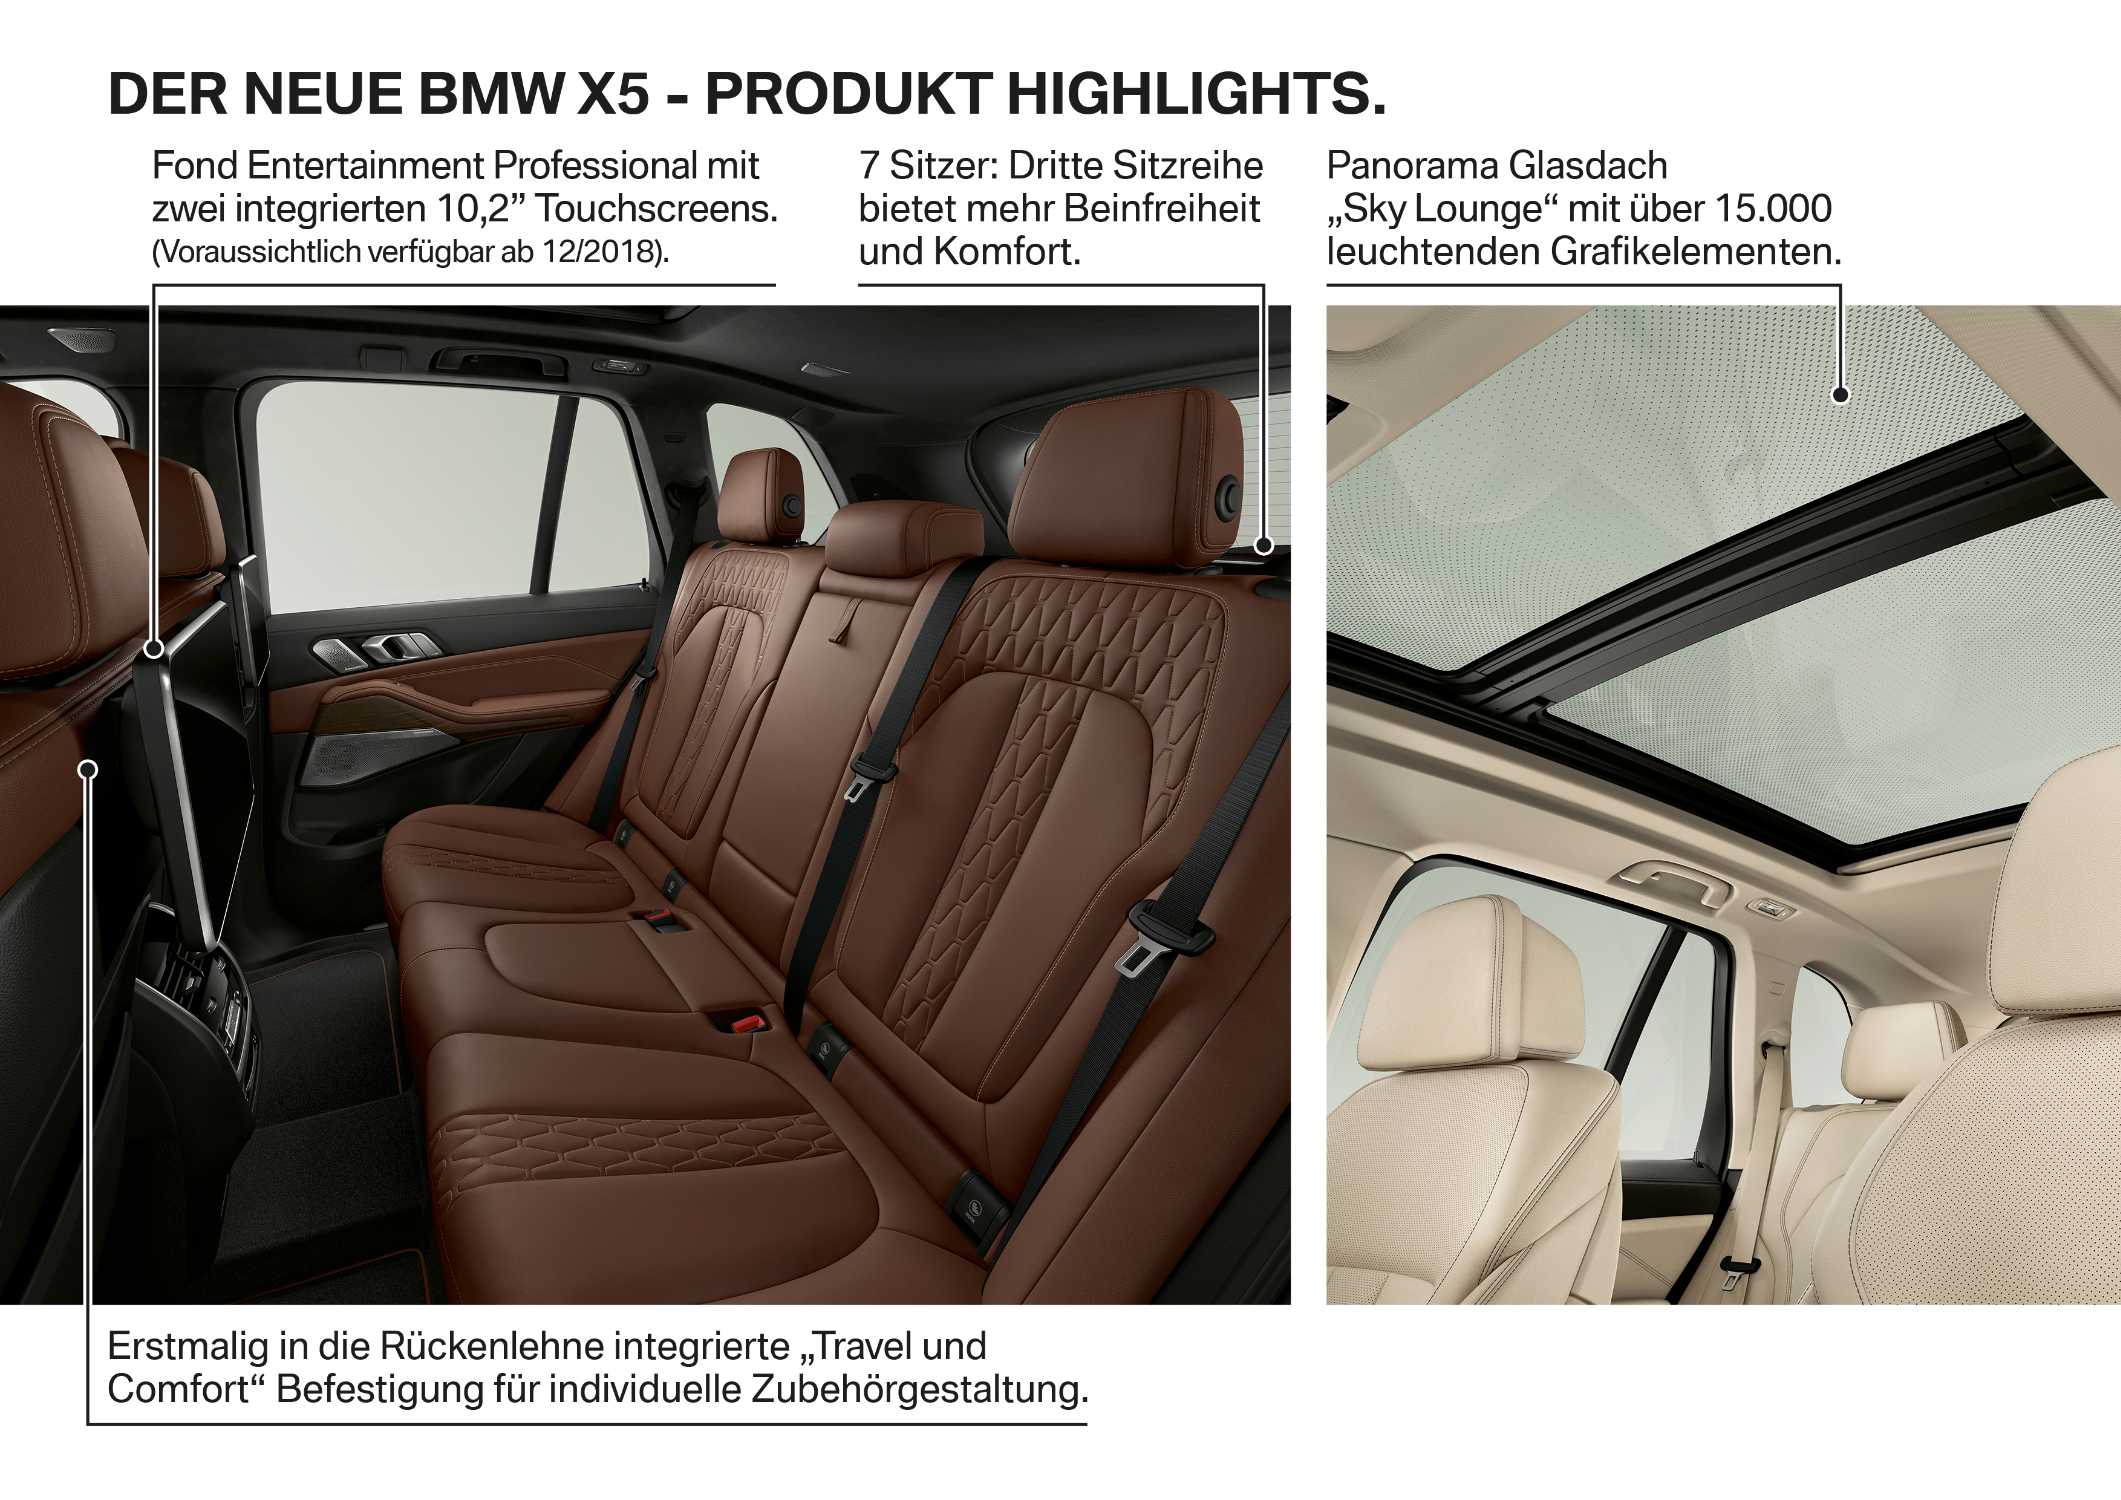 Der neue BMW X5 - Produkt Highlights (06/2018).